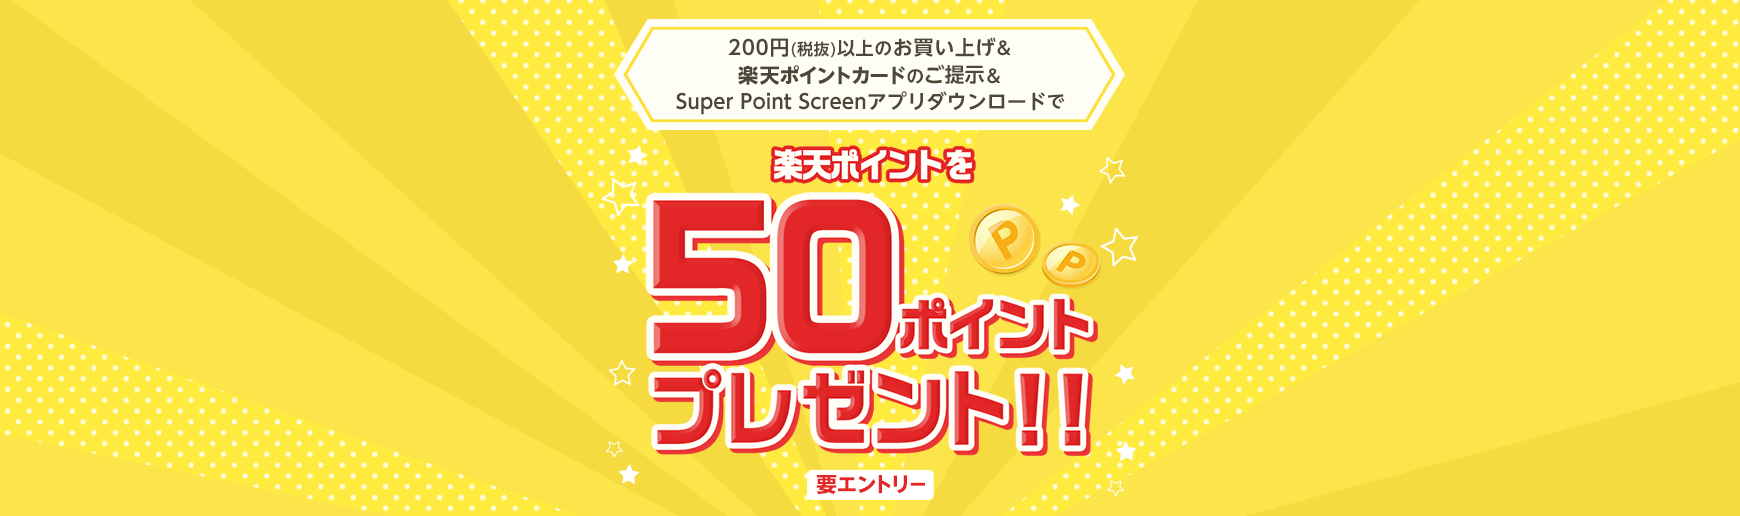 【サンドラッグ × Super Point Screen】50ポイントプレゼントキャンペーン │ 楽天スーパーポイントスクリーン